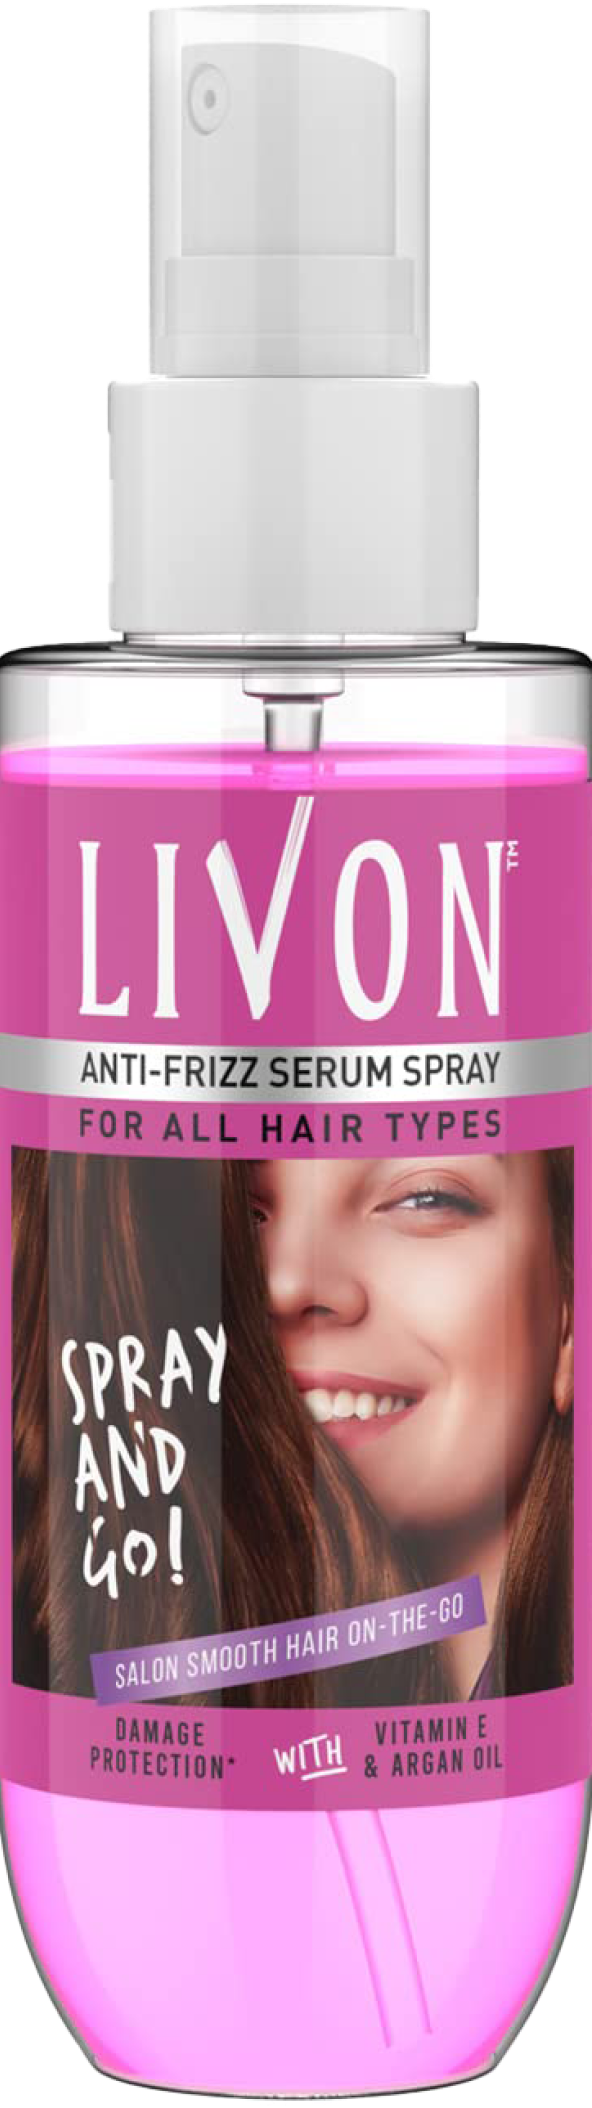 livon hair serum ingredients